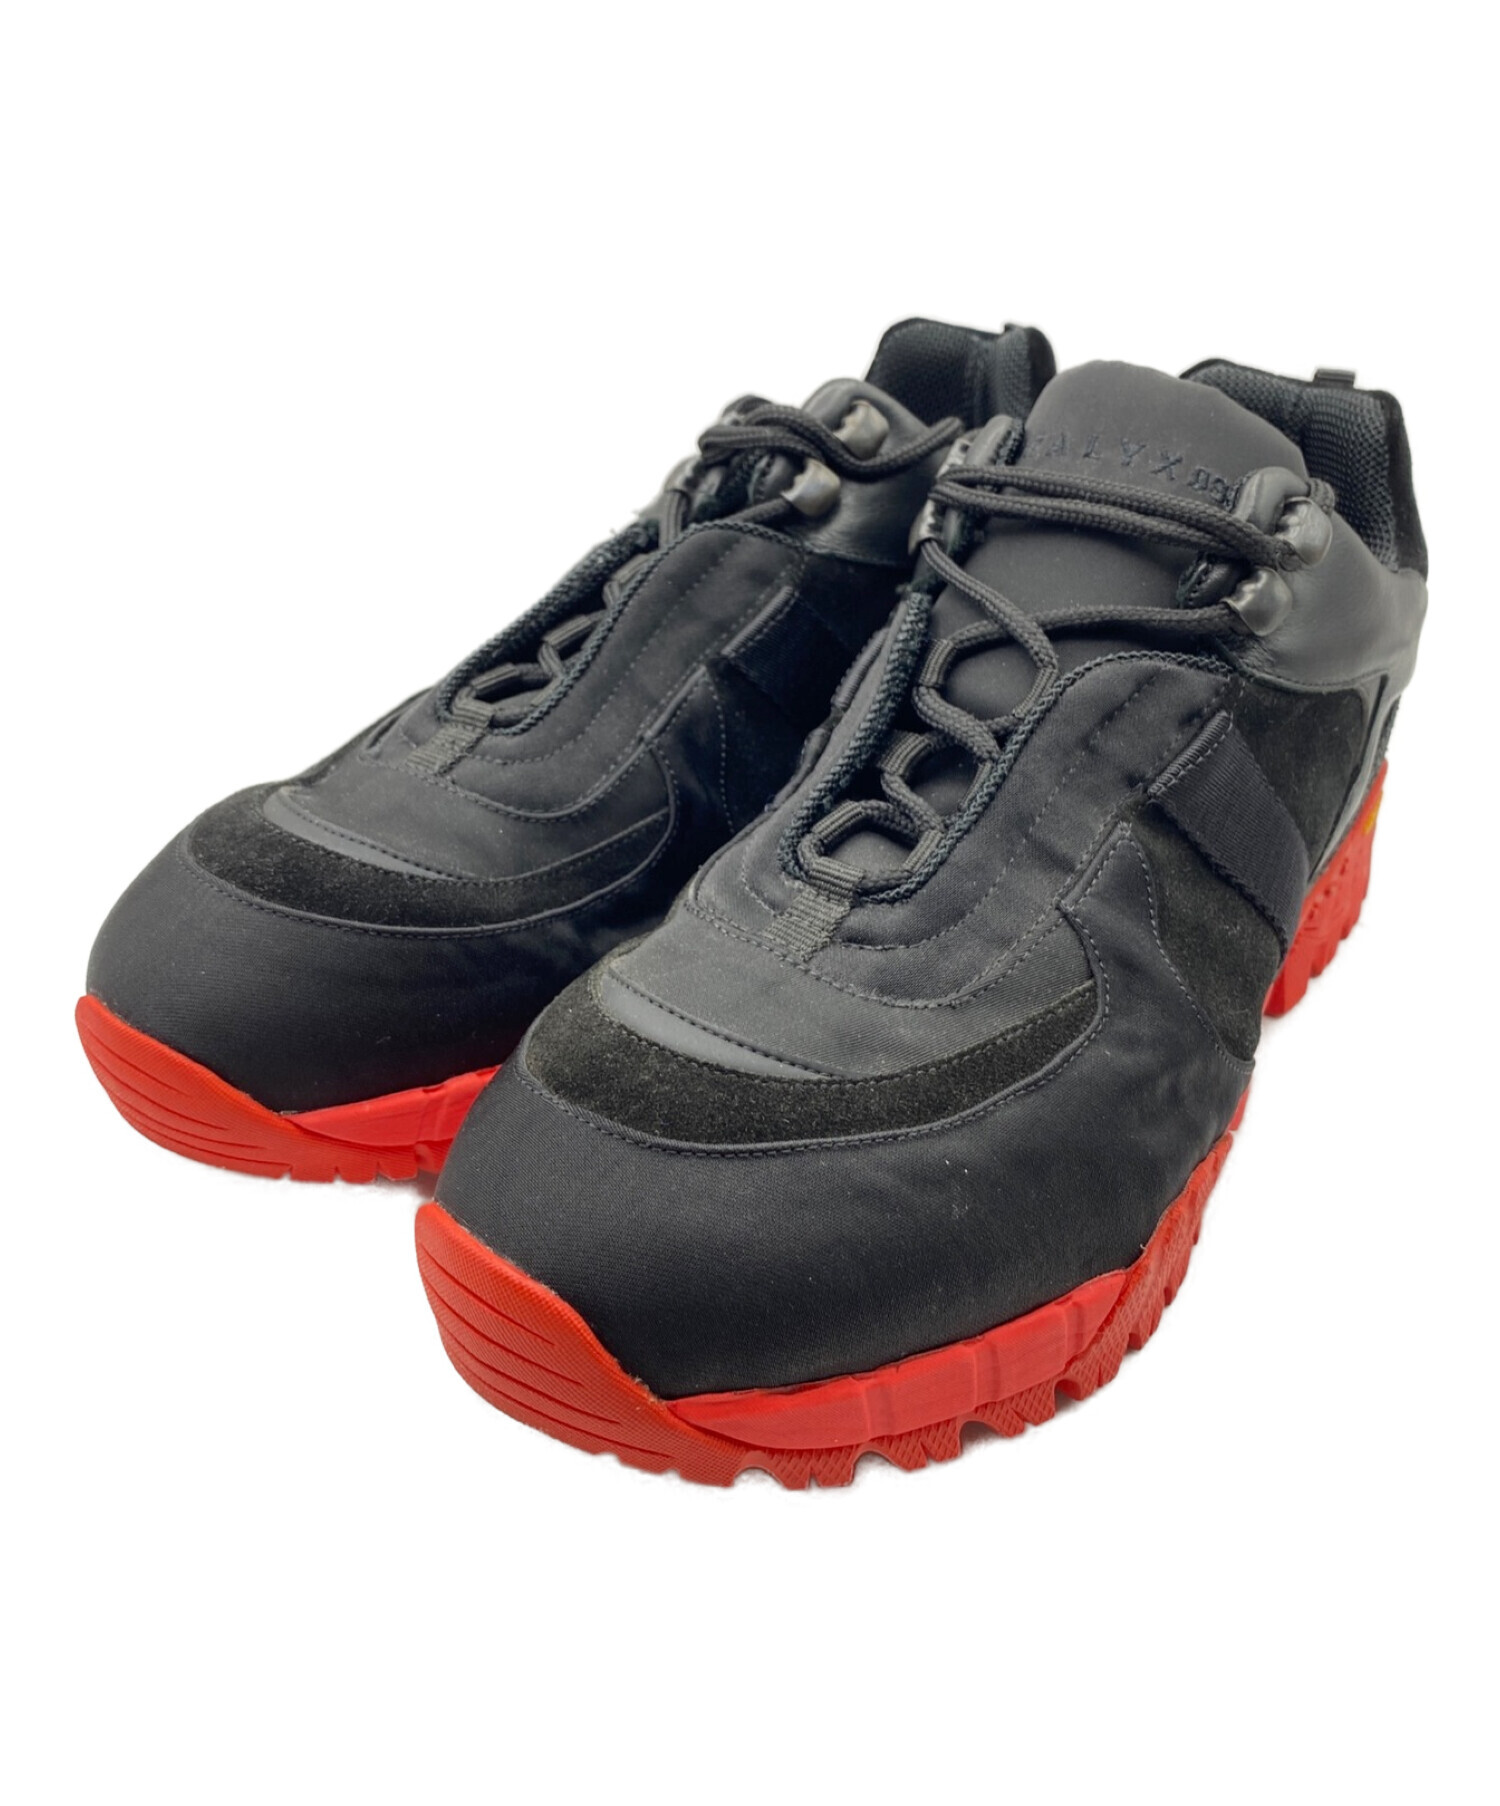 1017 ALYX 9SM Low Hiking boot ハイキングシューズメンズ - ブーツ